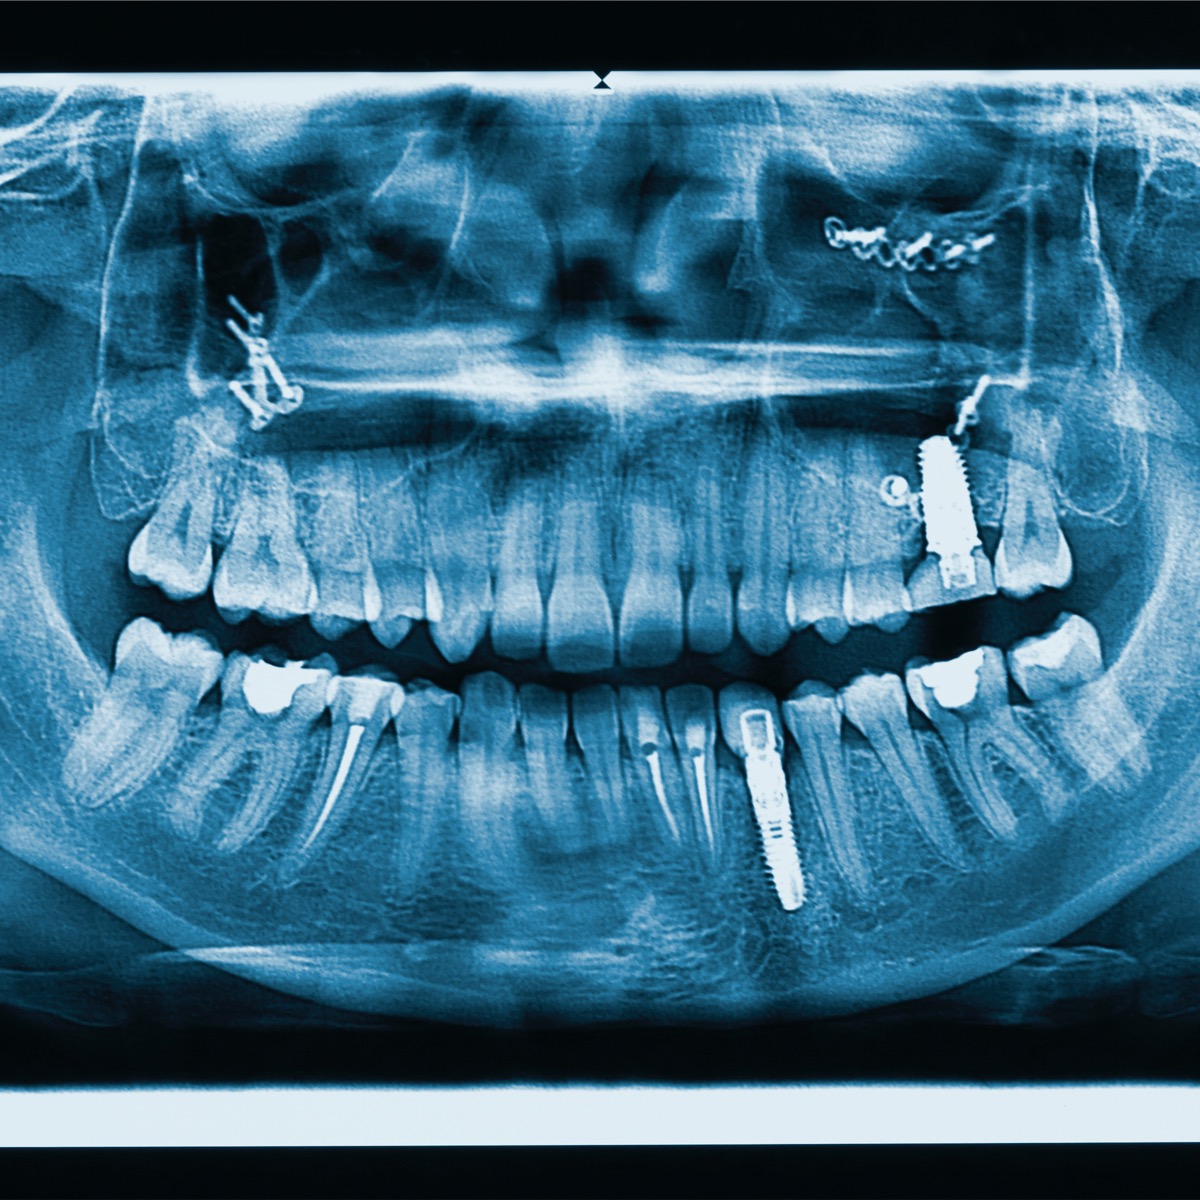 Implant X-ray